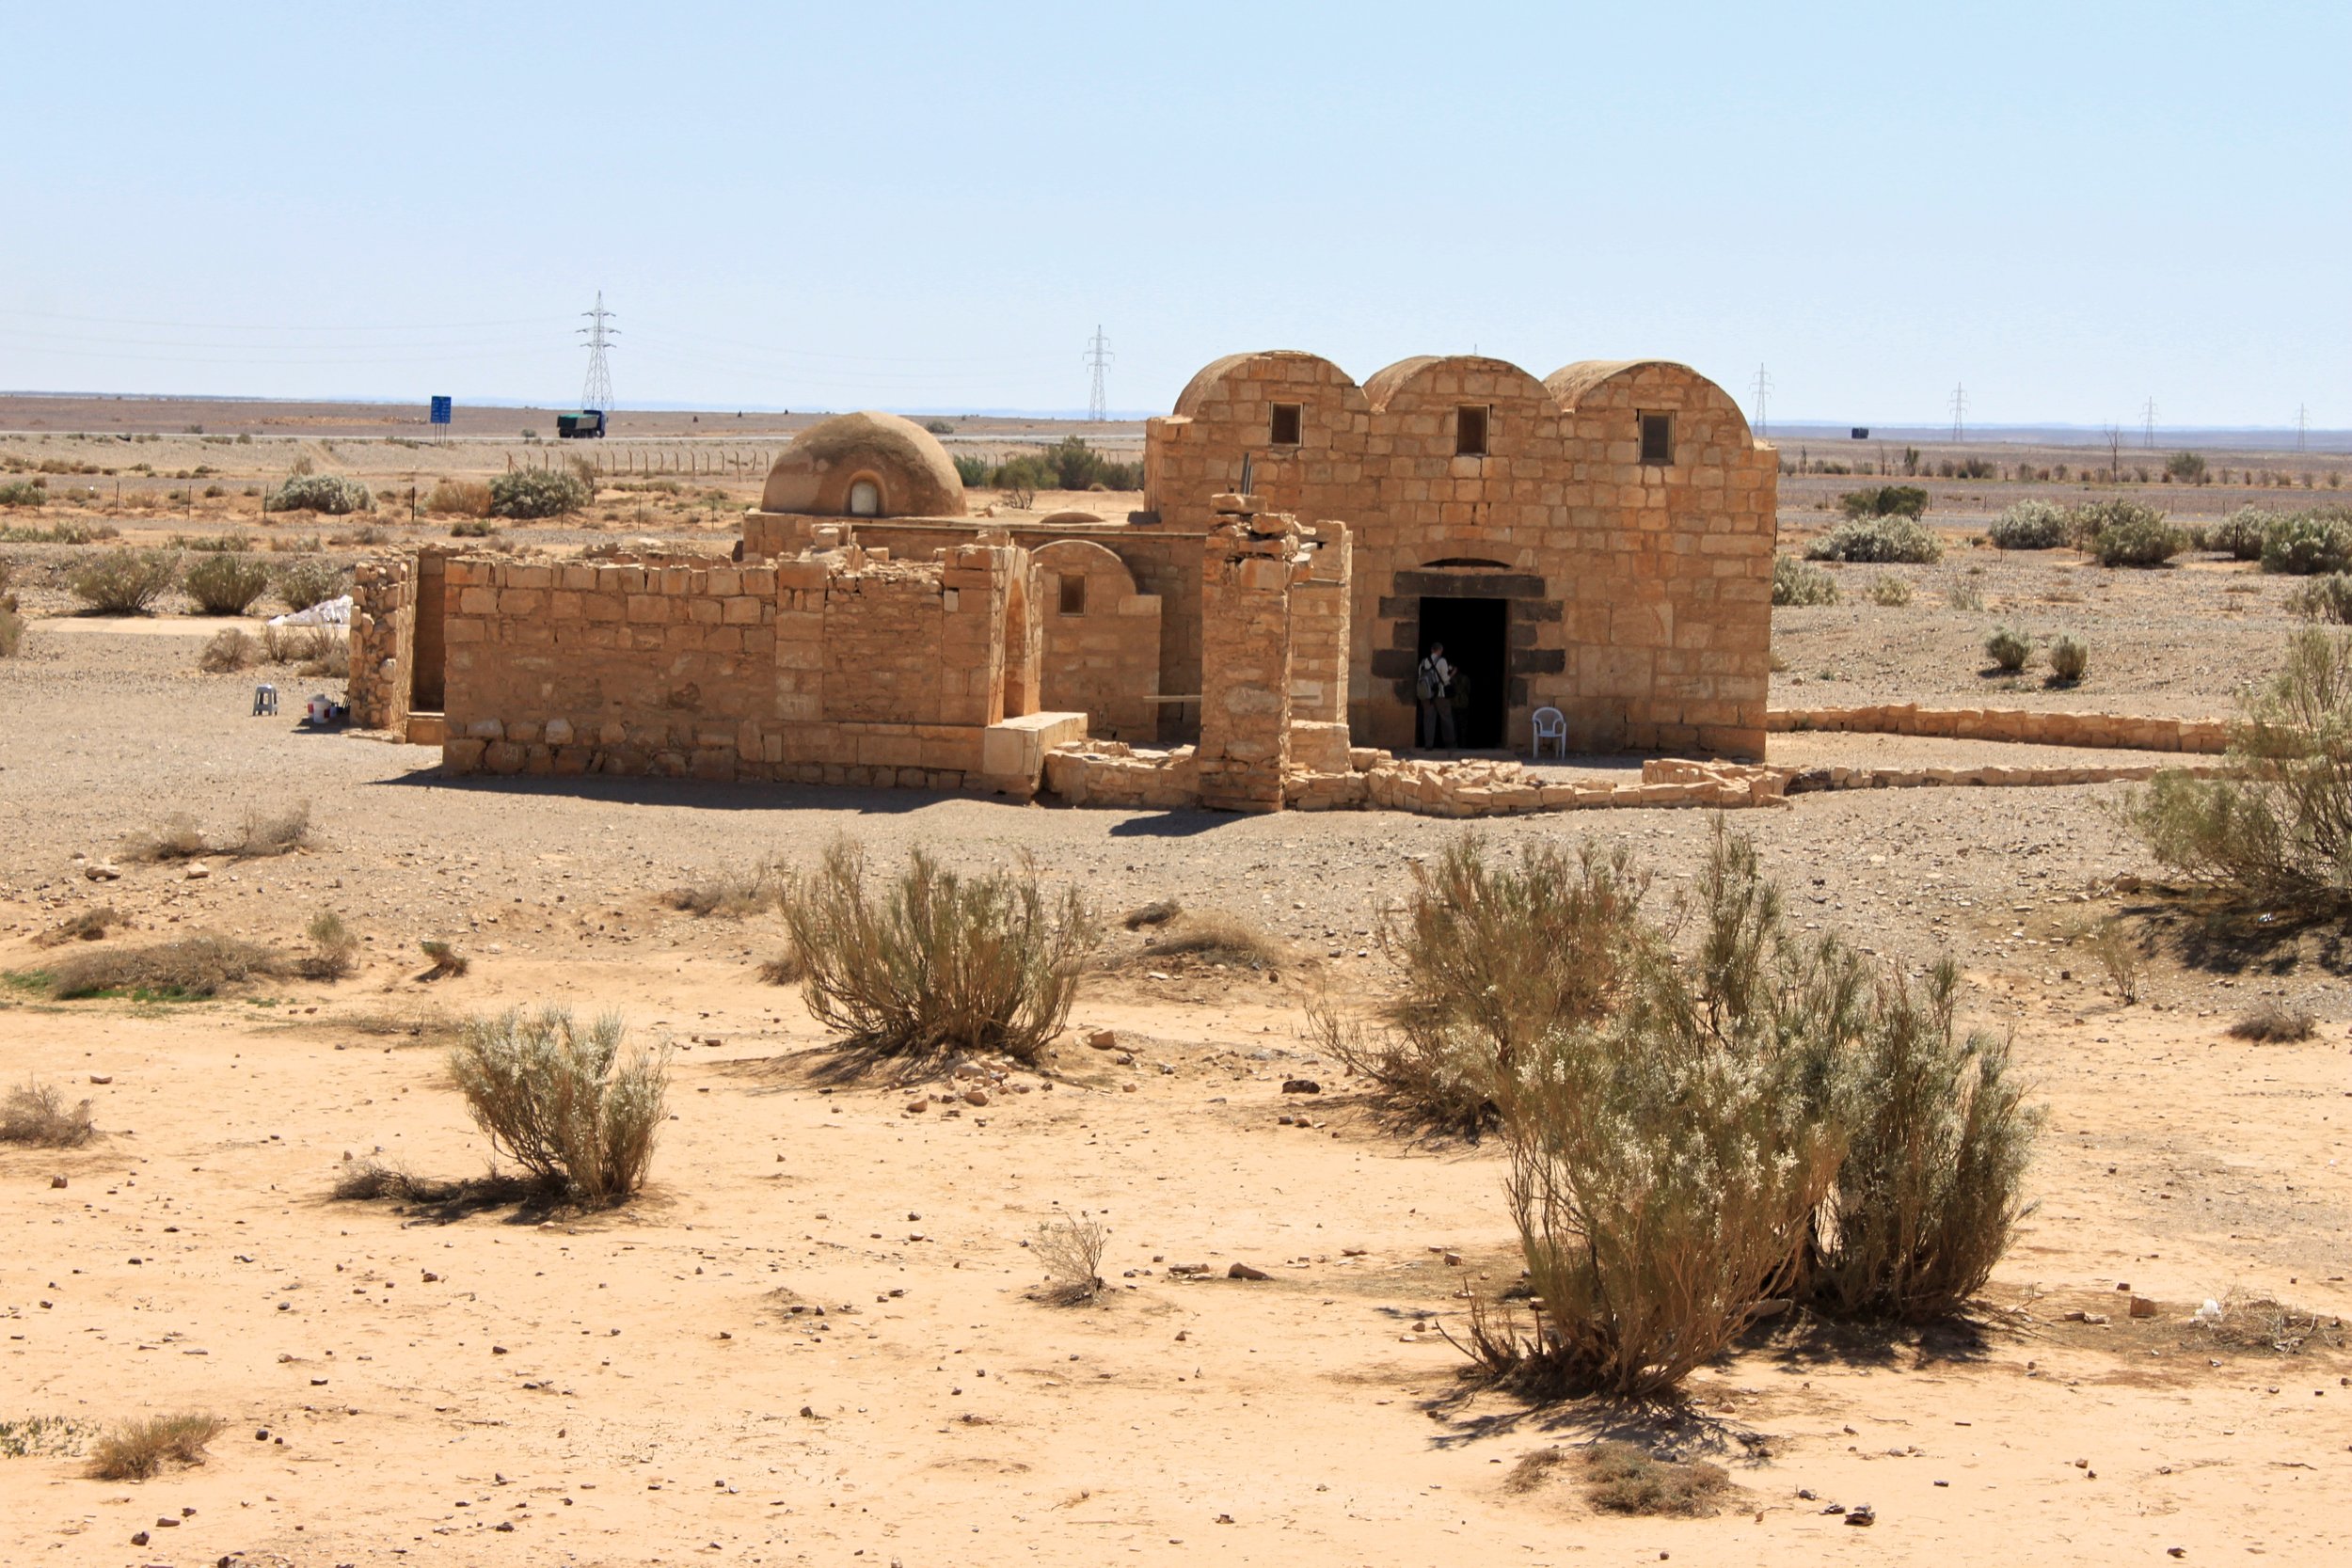 Qusayr 'Amra or Quseir Amra, "Desert Castle" in eastern Jordan